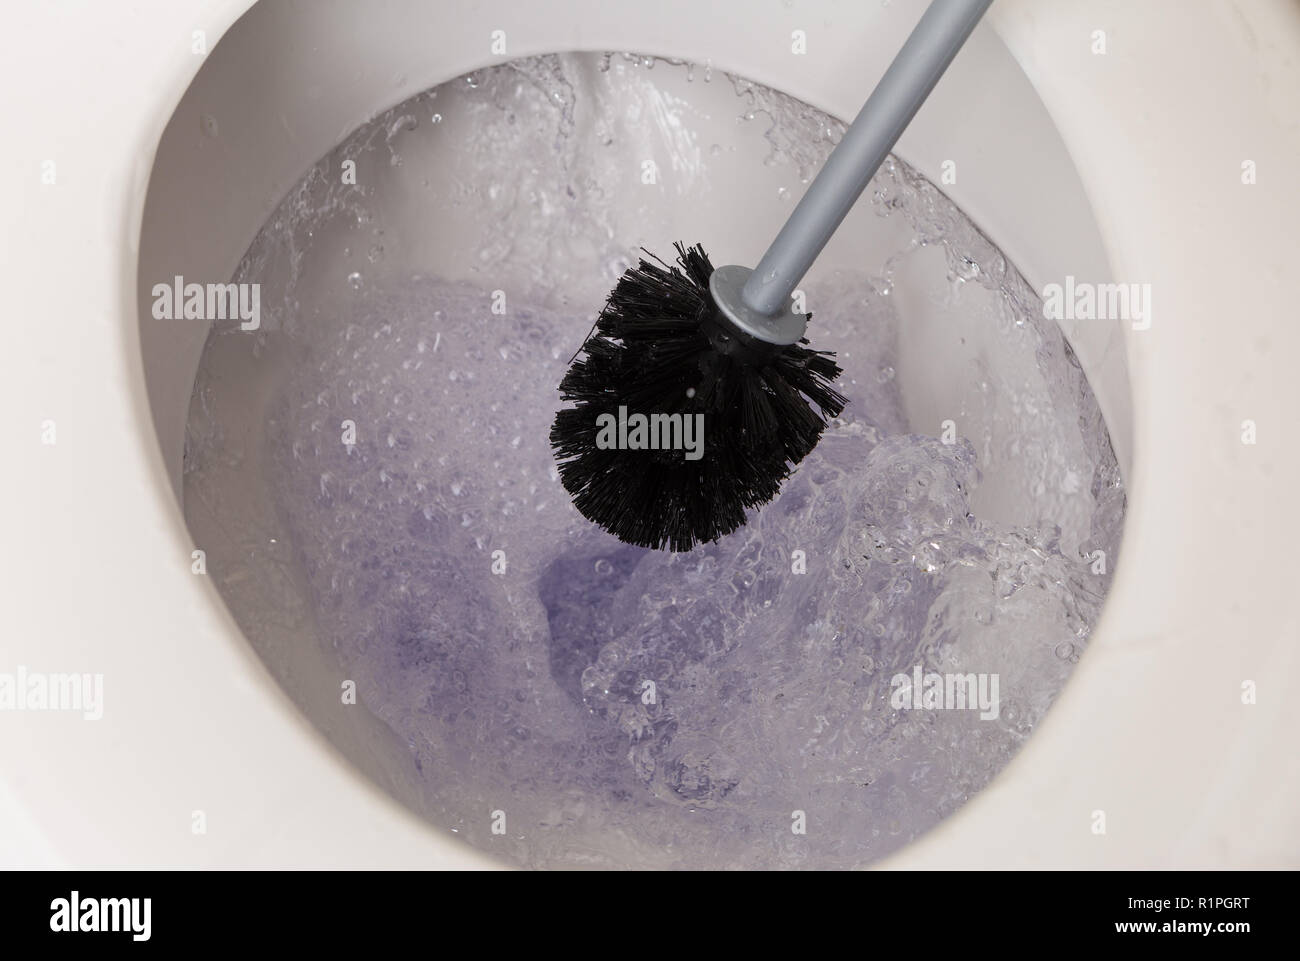 Cuvette en porcelaine de mousse violette en cours de nettoyage avec pinceau noir pendant le rinçage Banque D'Images